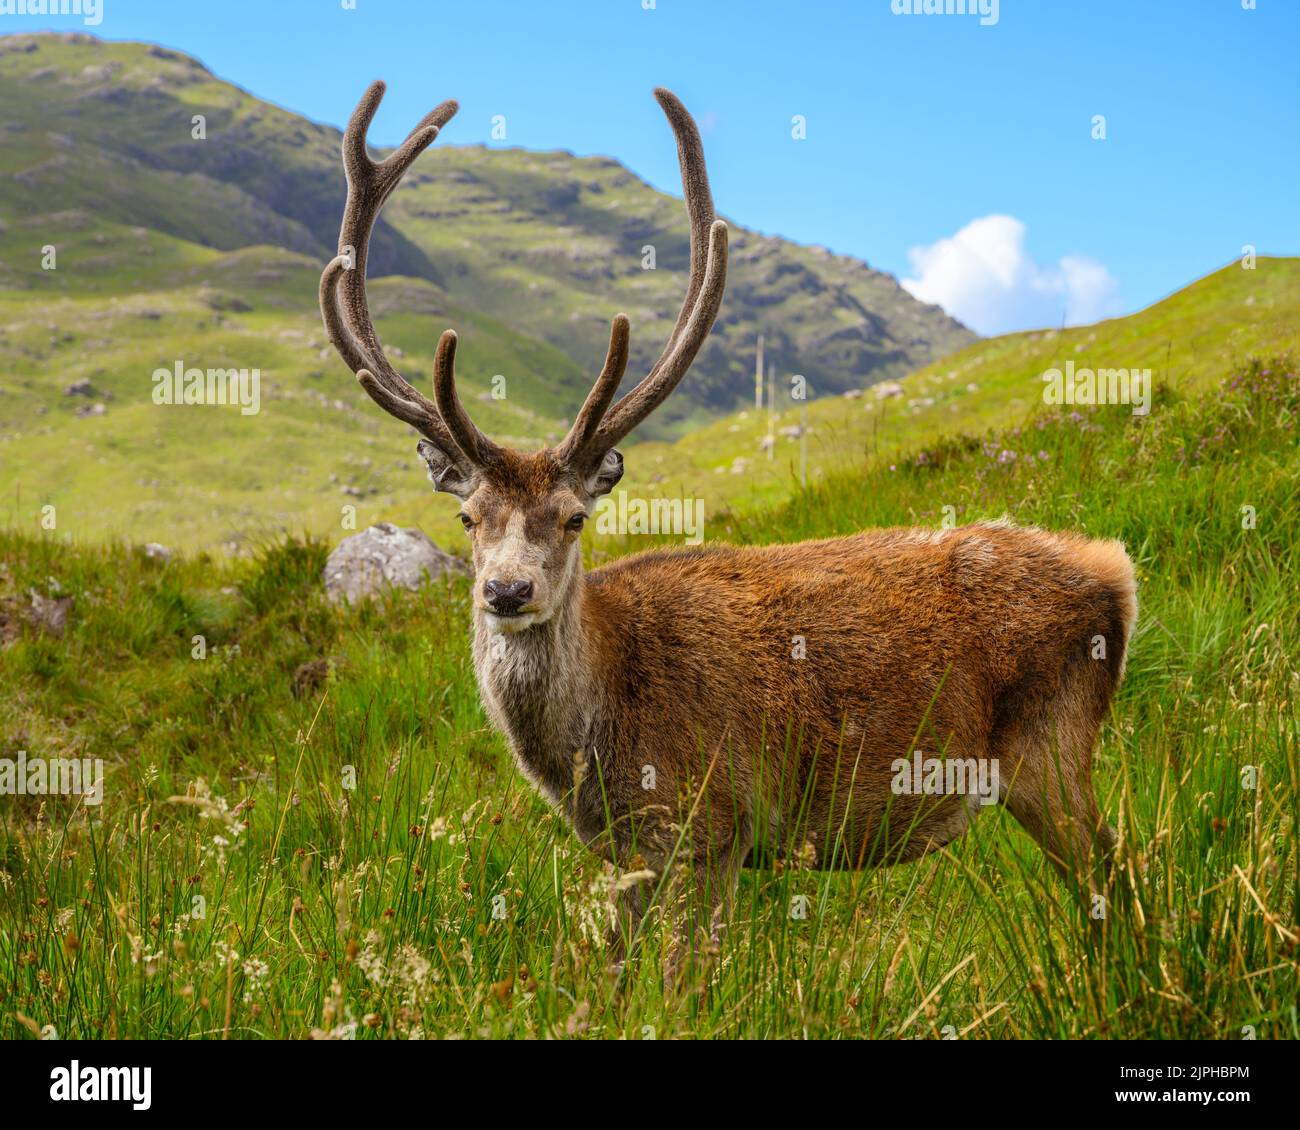 Callum è un cervo rosso che vive a Torridon, nelle Highlands scozzesi. Può essere visto appeso spesso intorno ad un parcheggio. Foto Stock